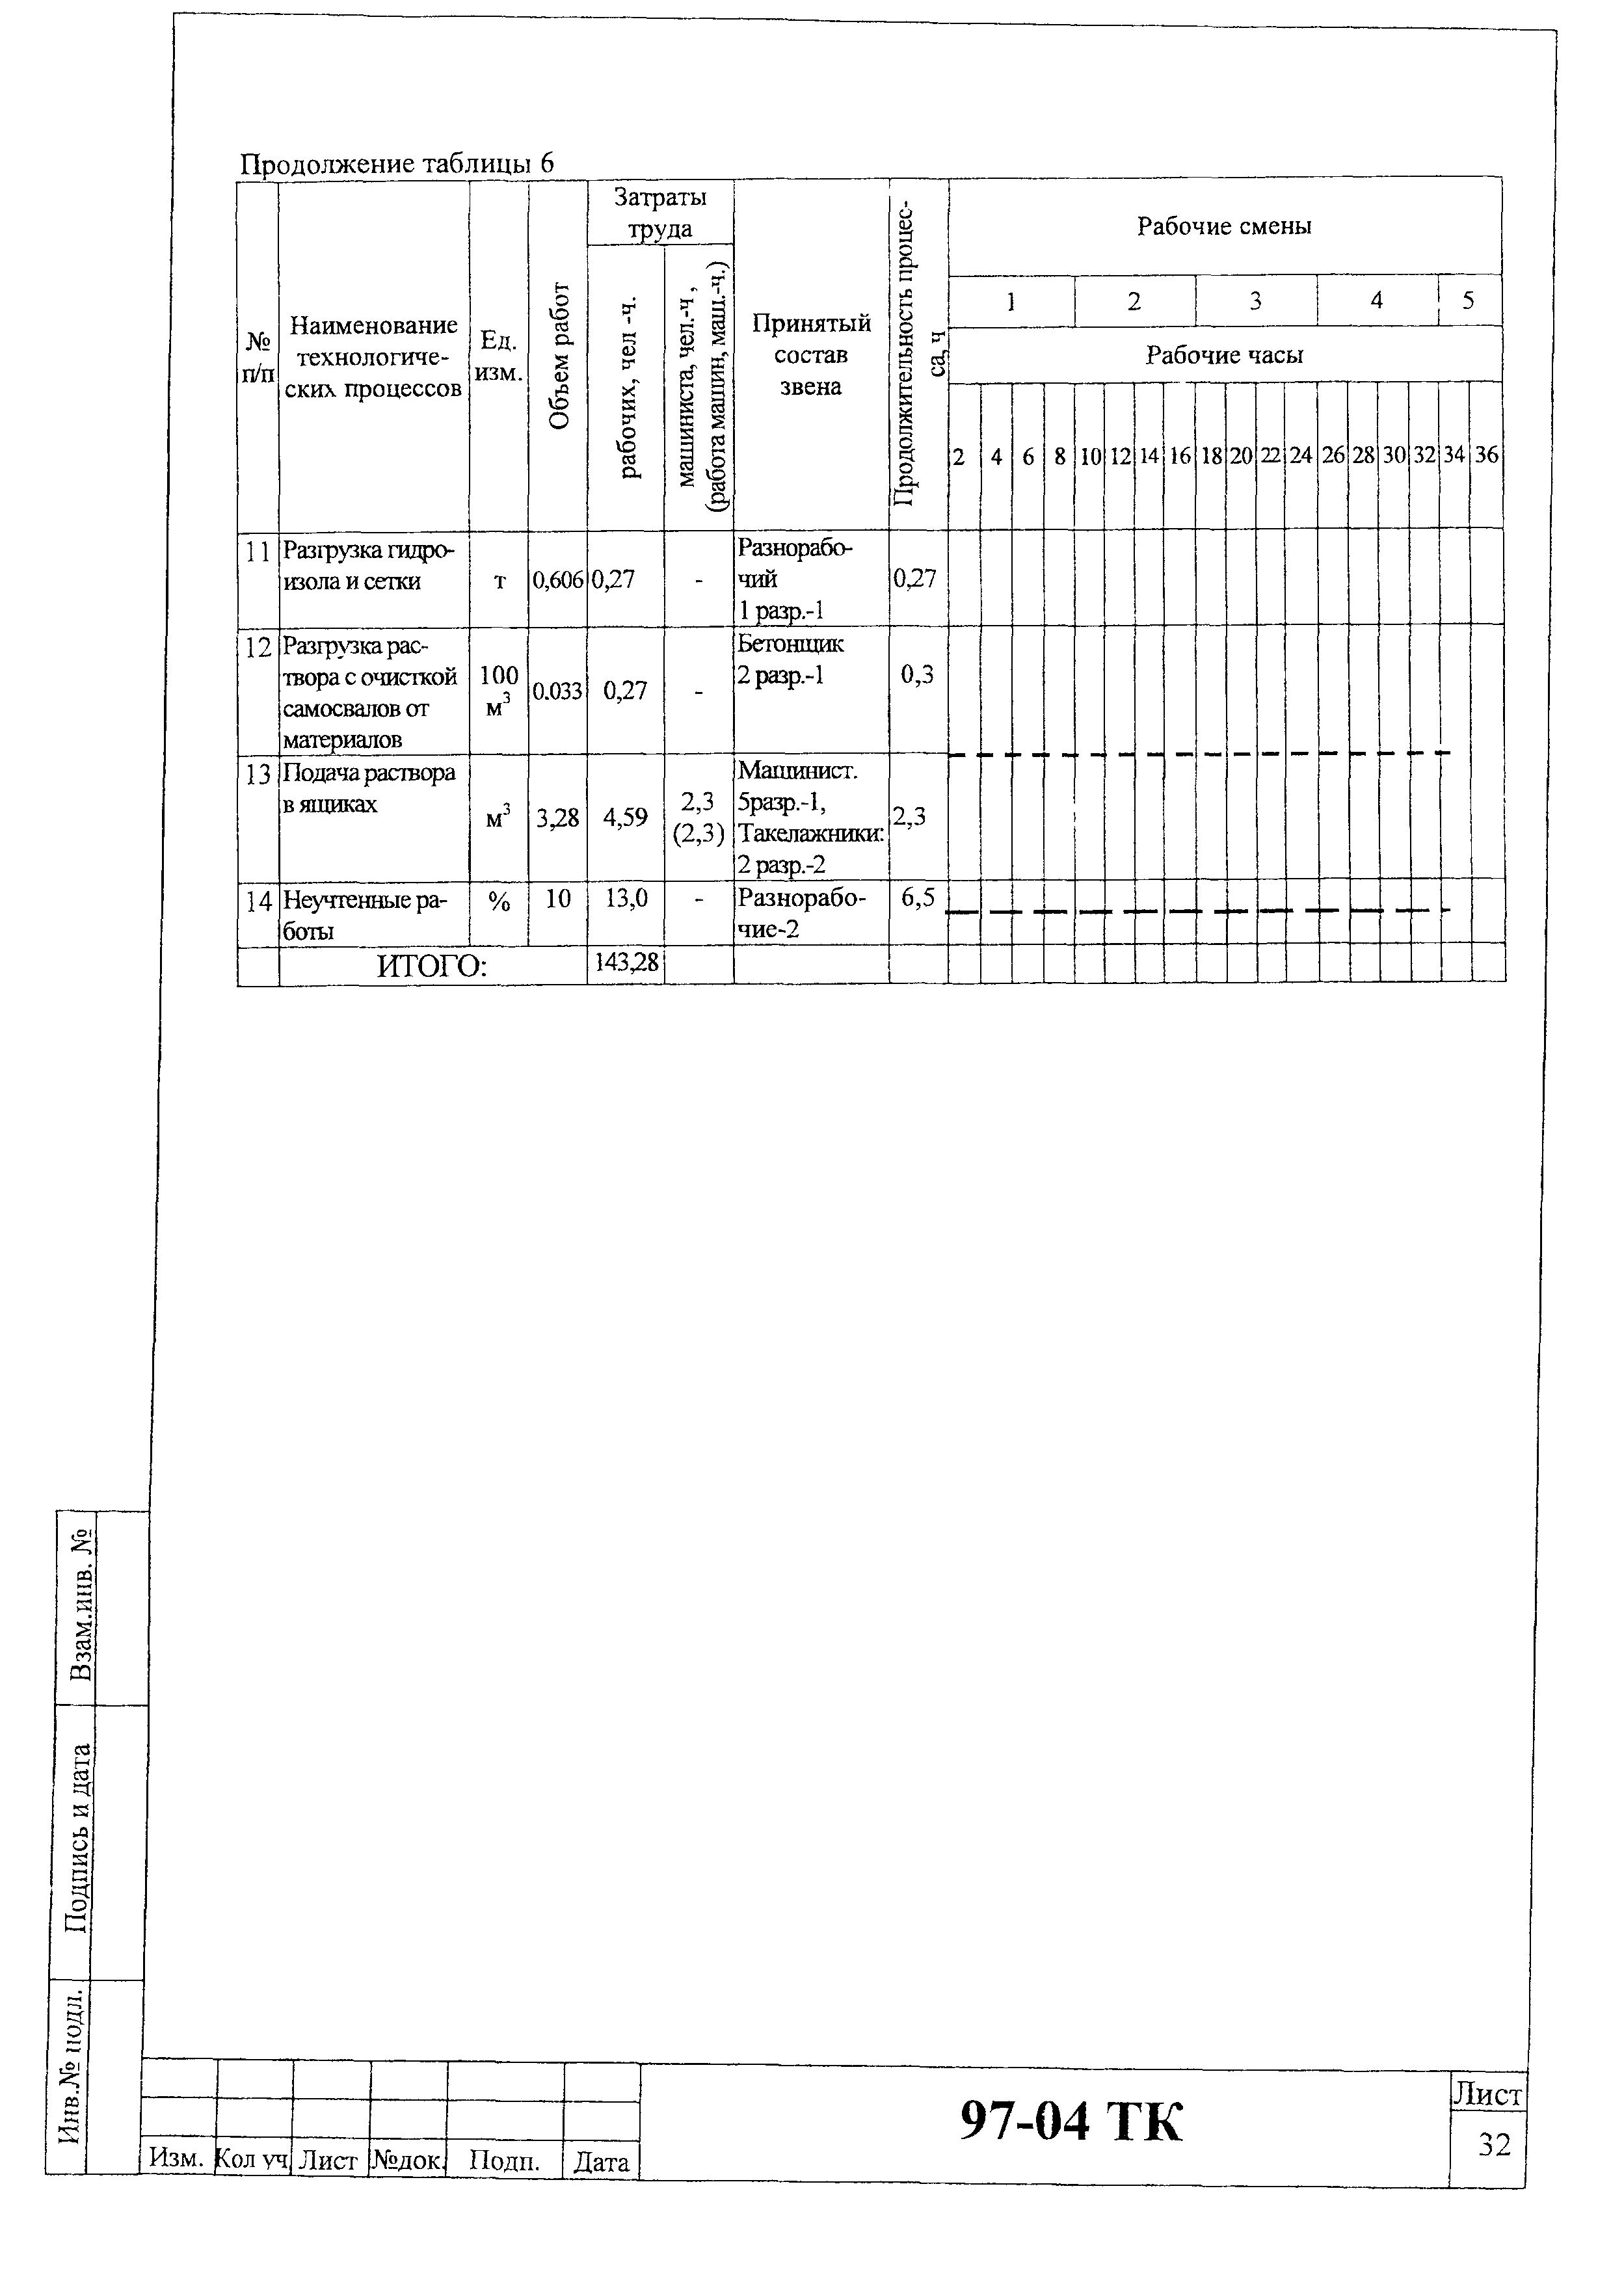 Технологическая карта 97-04 ТК